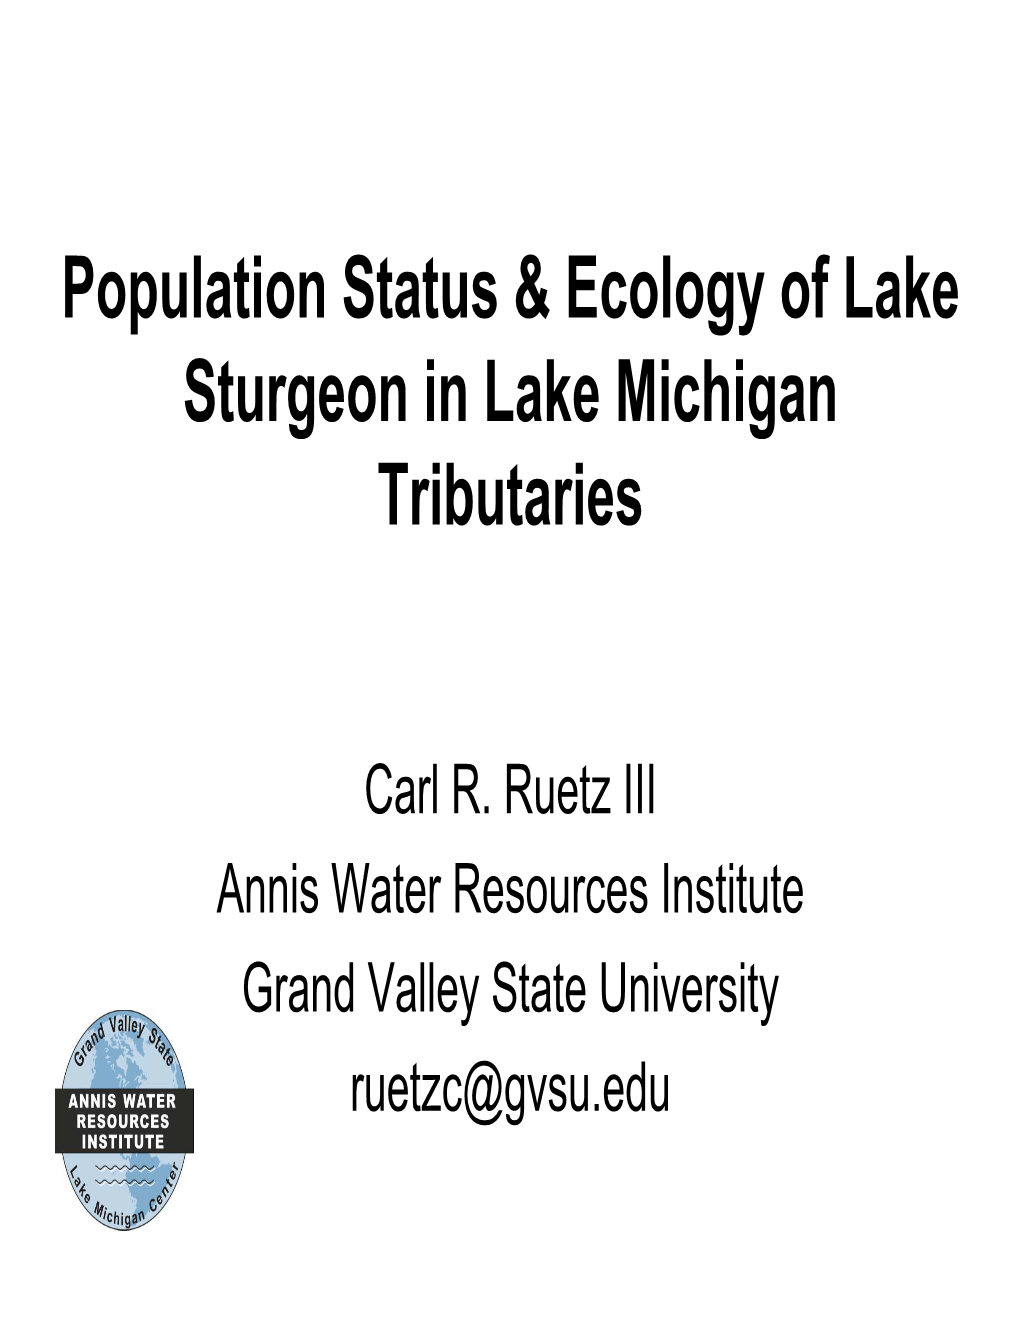 Population Status & Ecology of Lake Sturgeon in Lake Michigan Tributaries